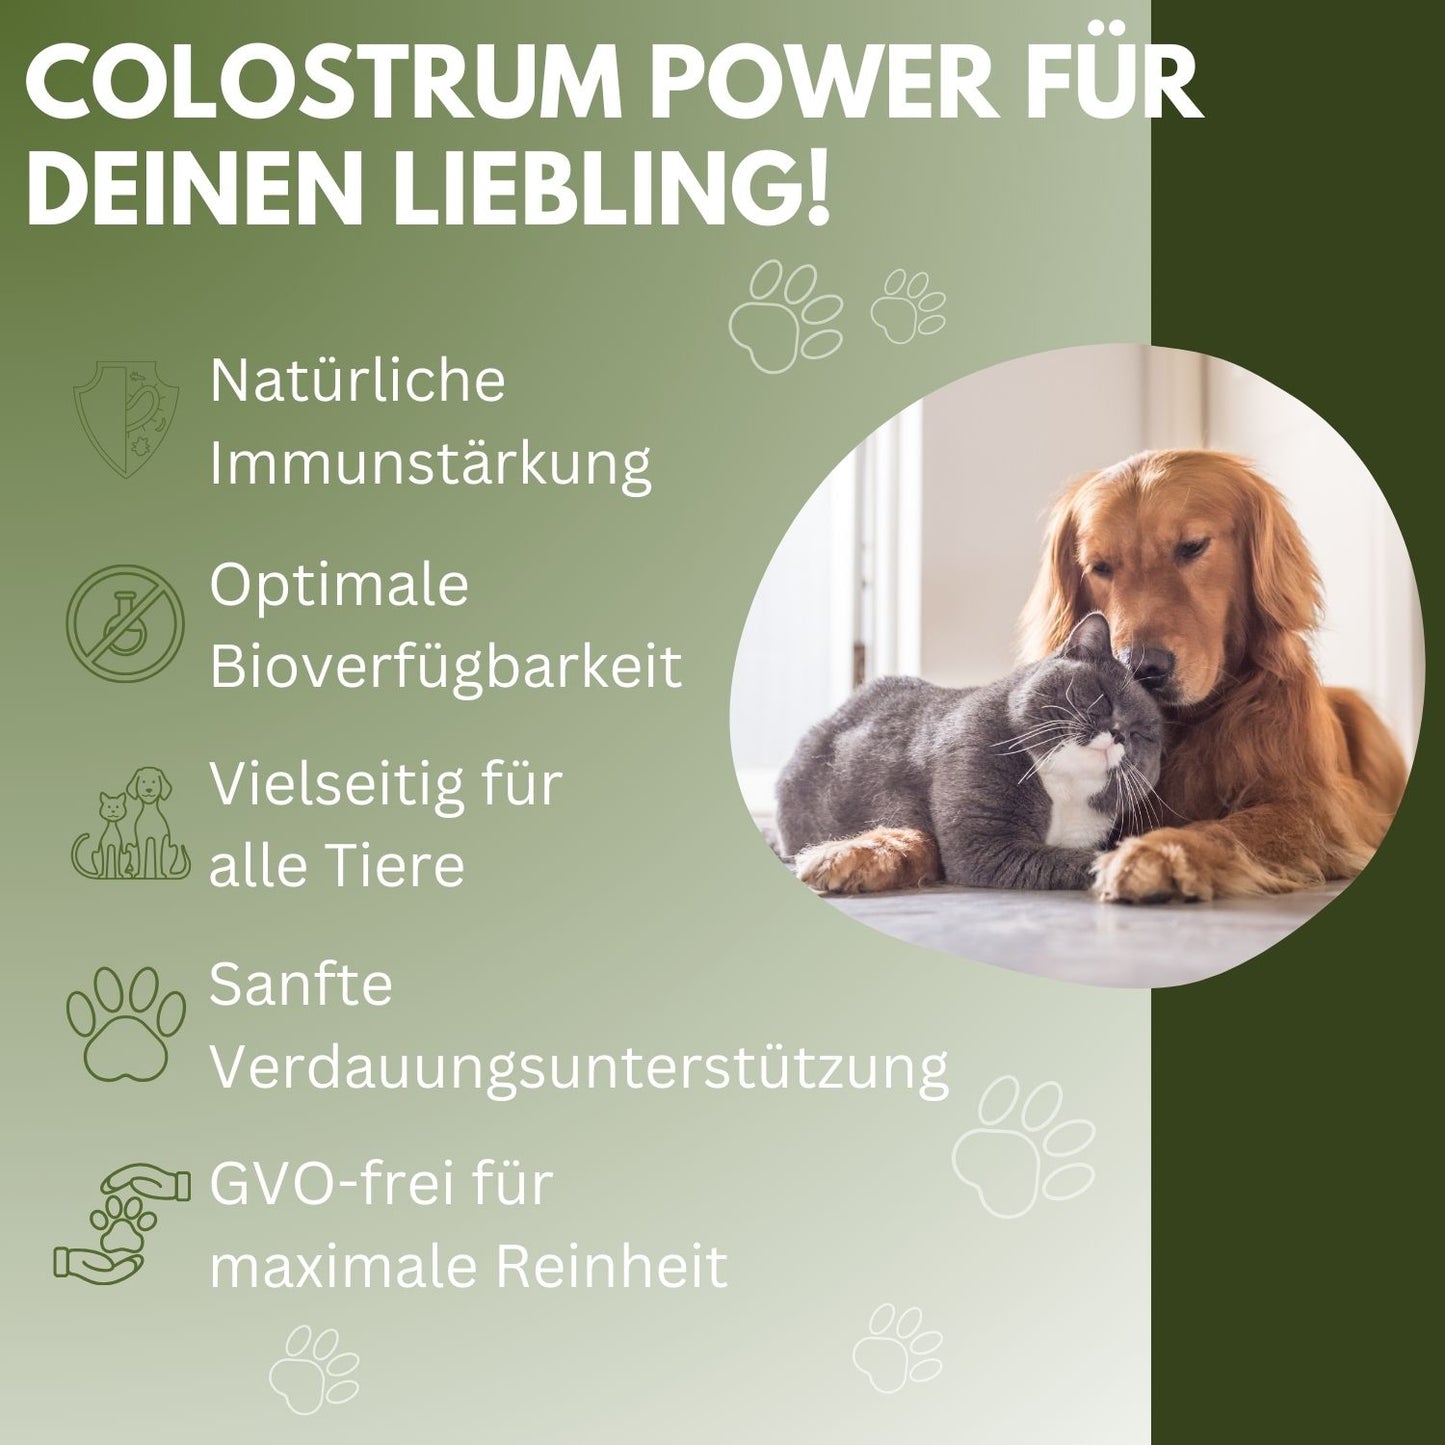 vetDocs Colostrum I Colostrum flüssig I Bio colostrum I Das Premium-Nahrungsergänzungsmittel für Hunde und Katzen